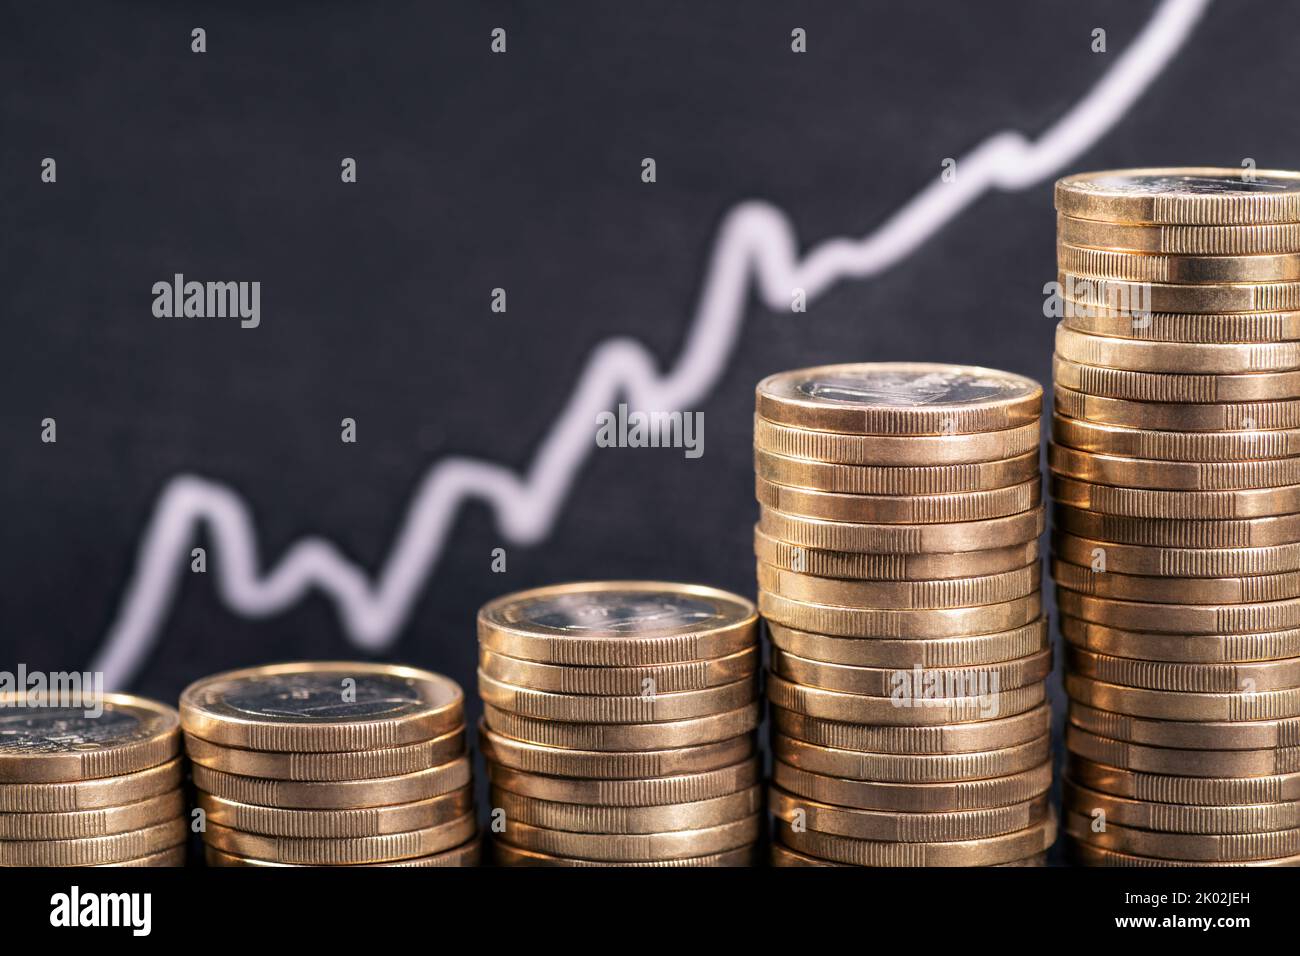 Hausse des prix et des coûts due à l'inflation. Pile de pièces en face d'un graphique avec une courbe ascendante. Banque D'Images